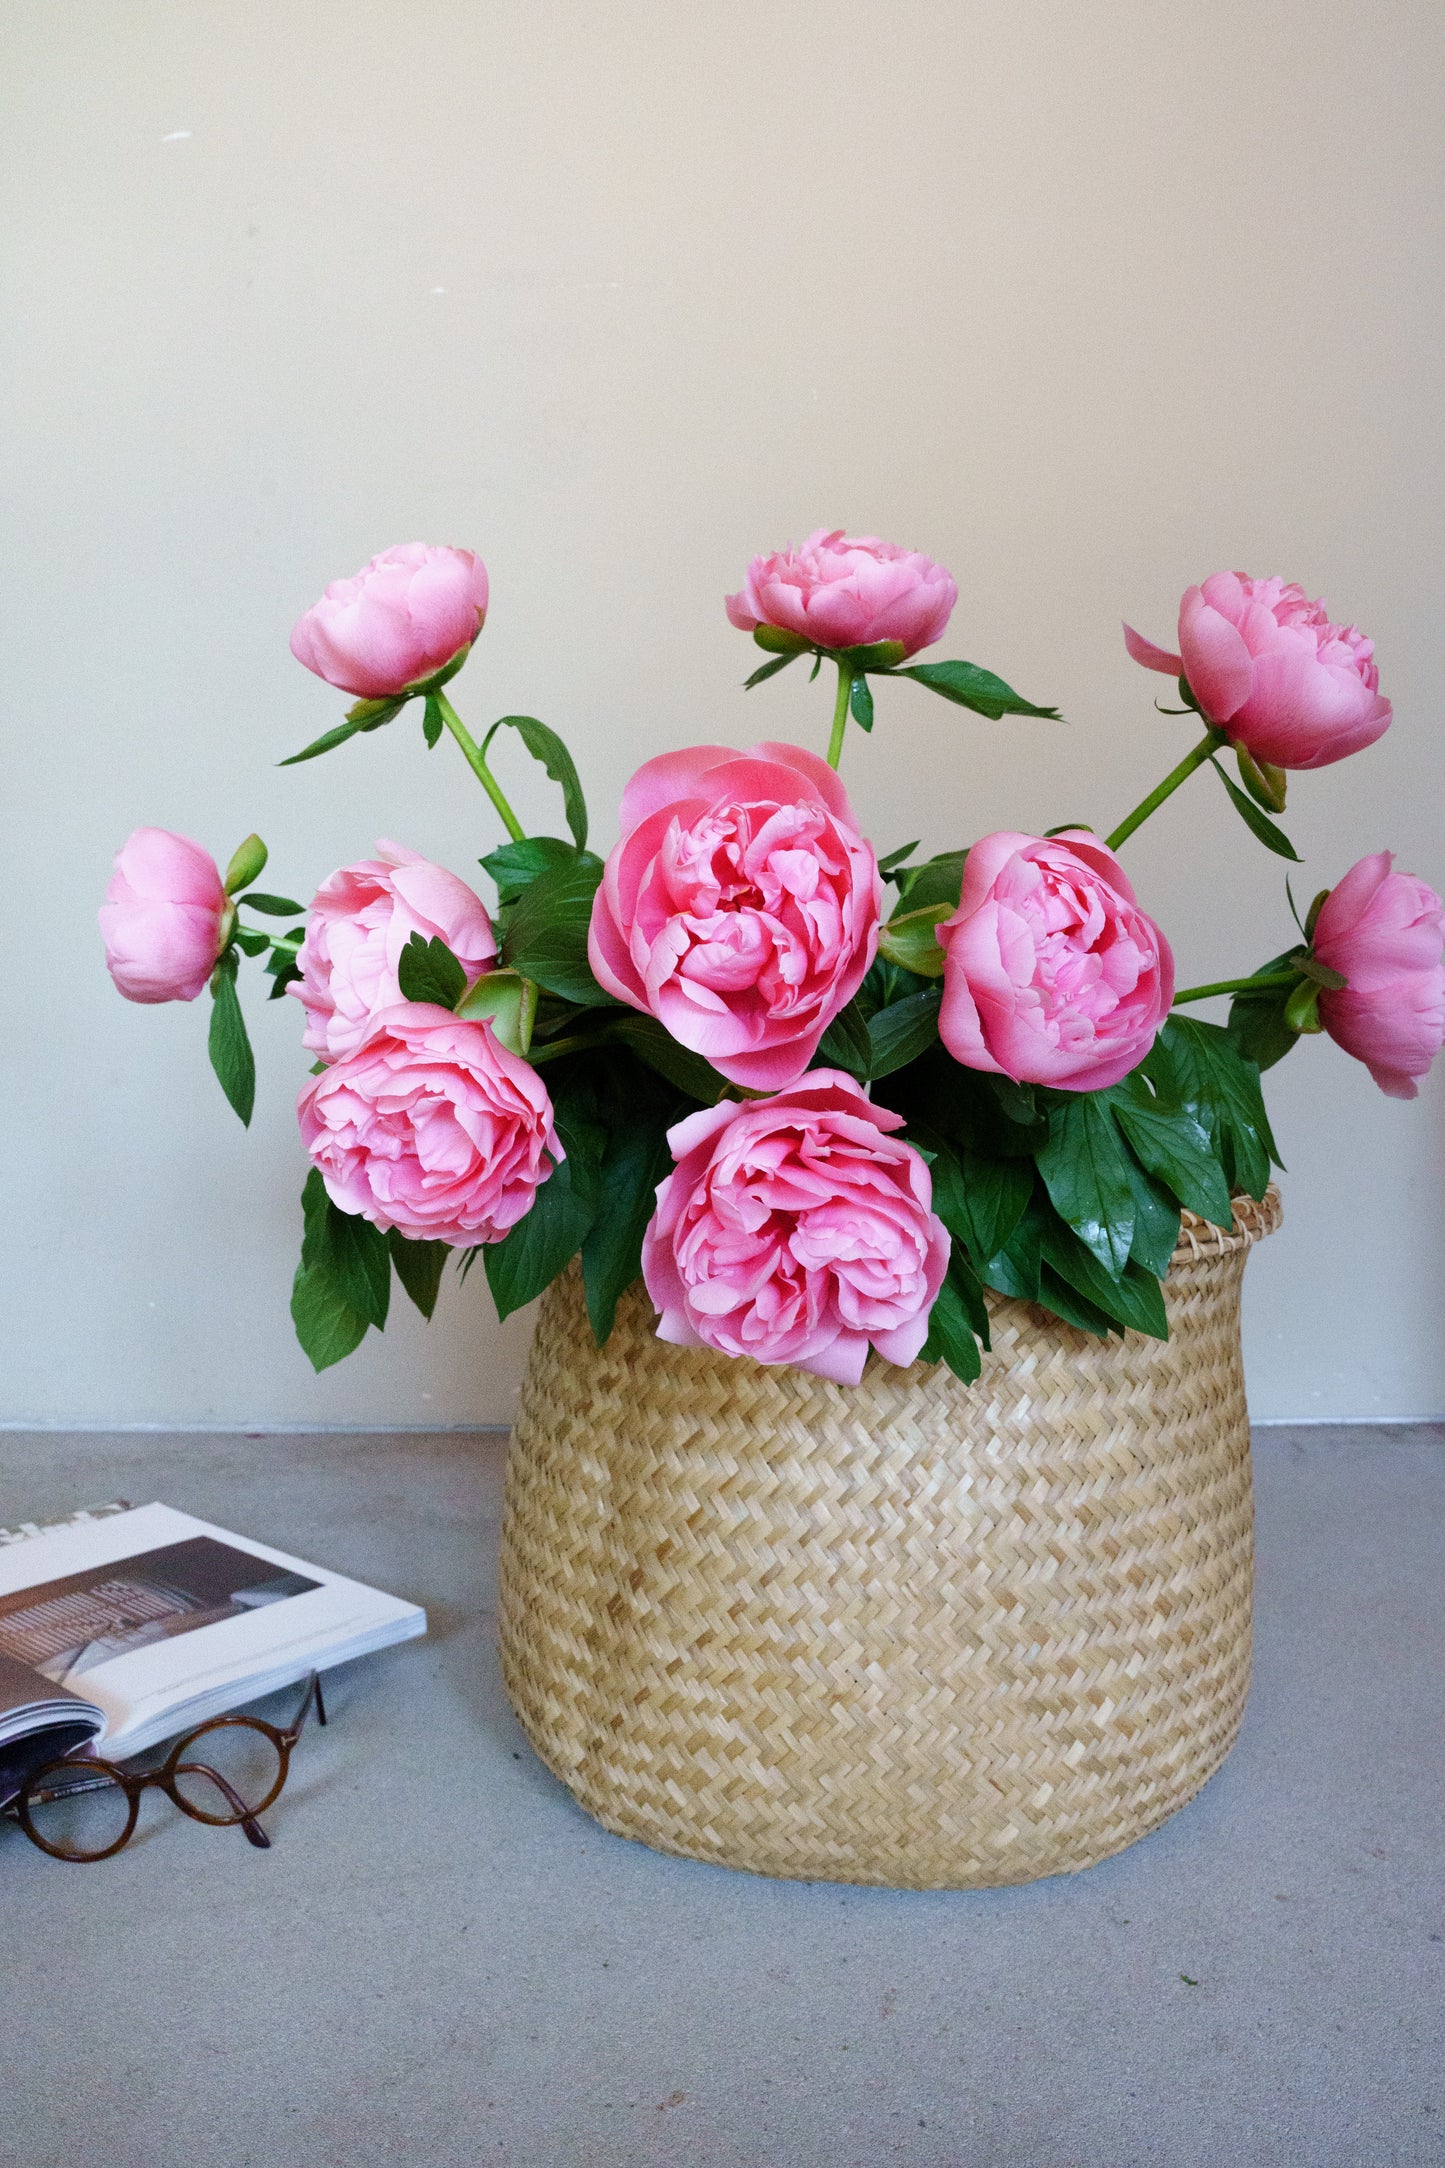 Pioenrozen laten bezorgen? Bij ons gemakkelijk online bloemen bestellen bij de online bloemist en snel bezorgd!